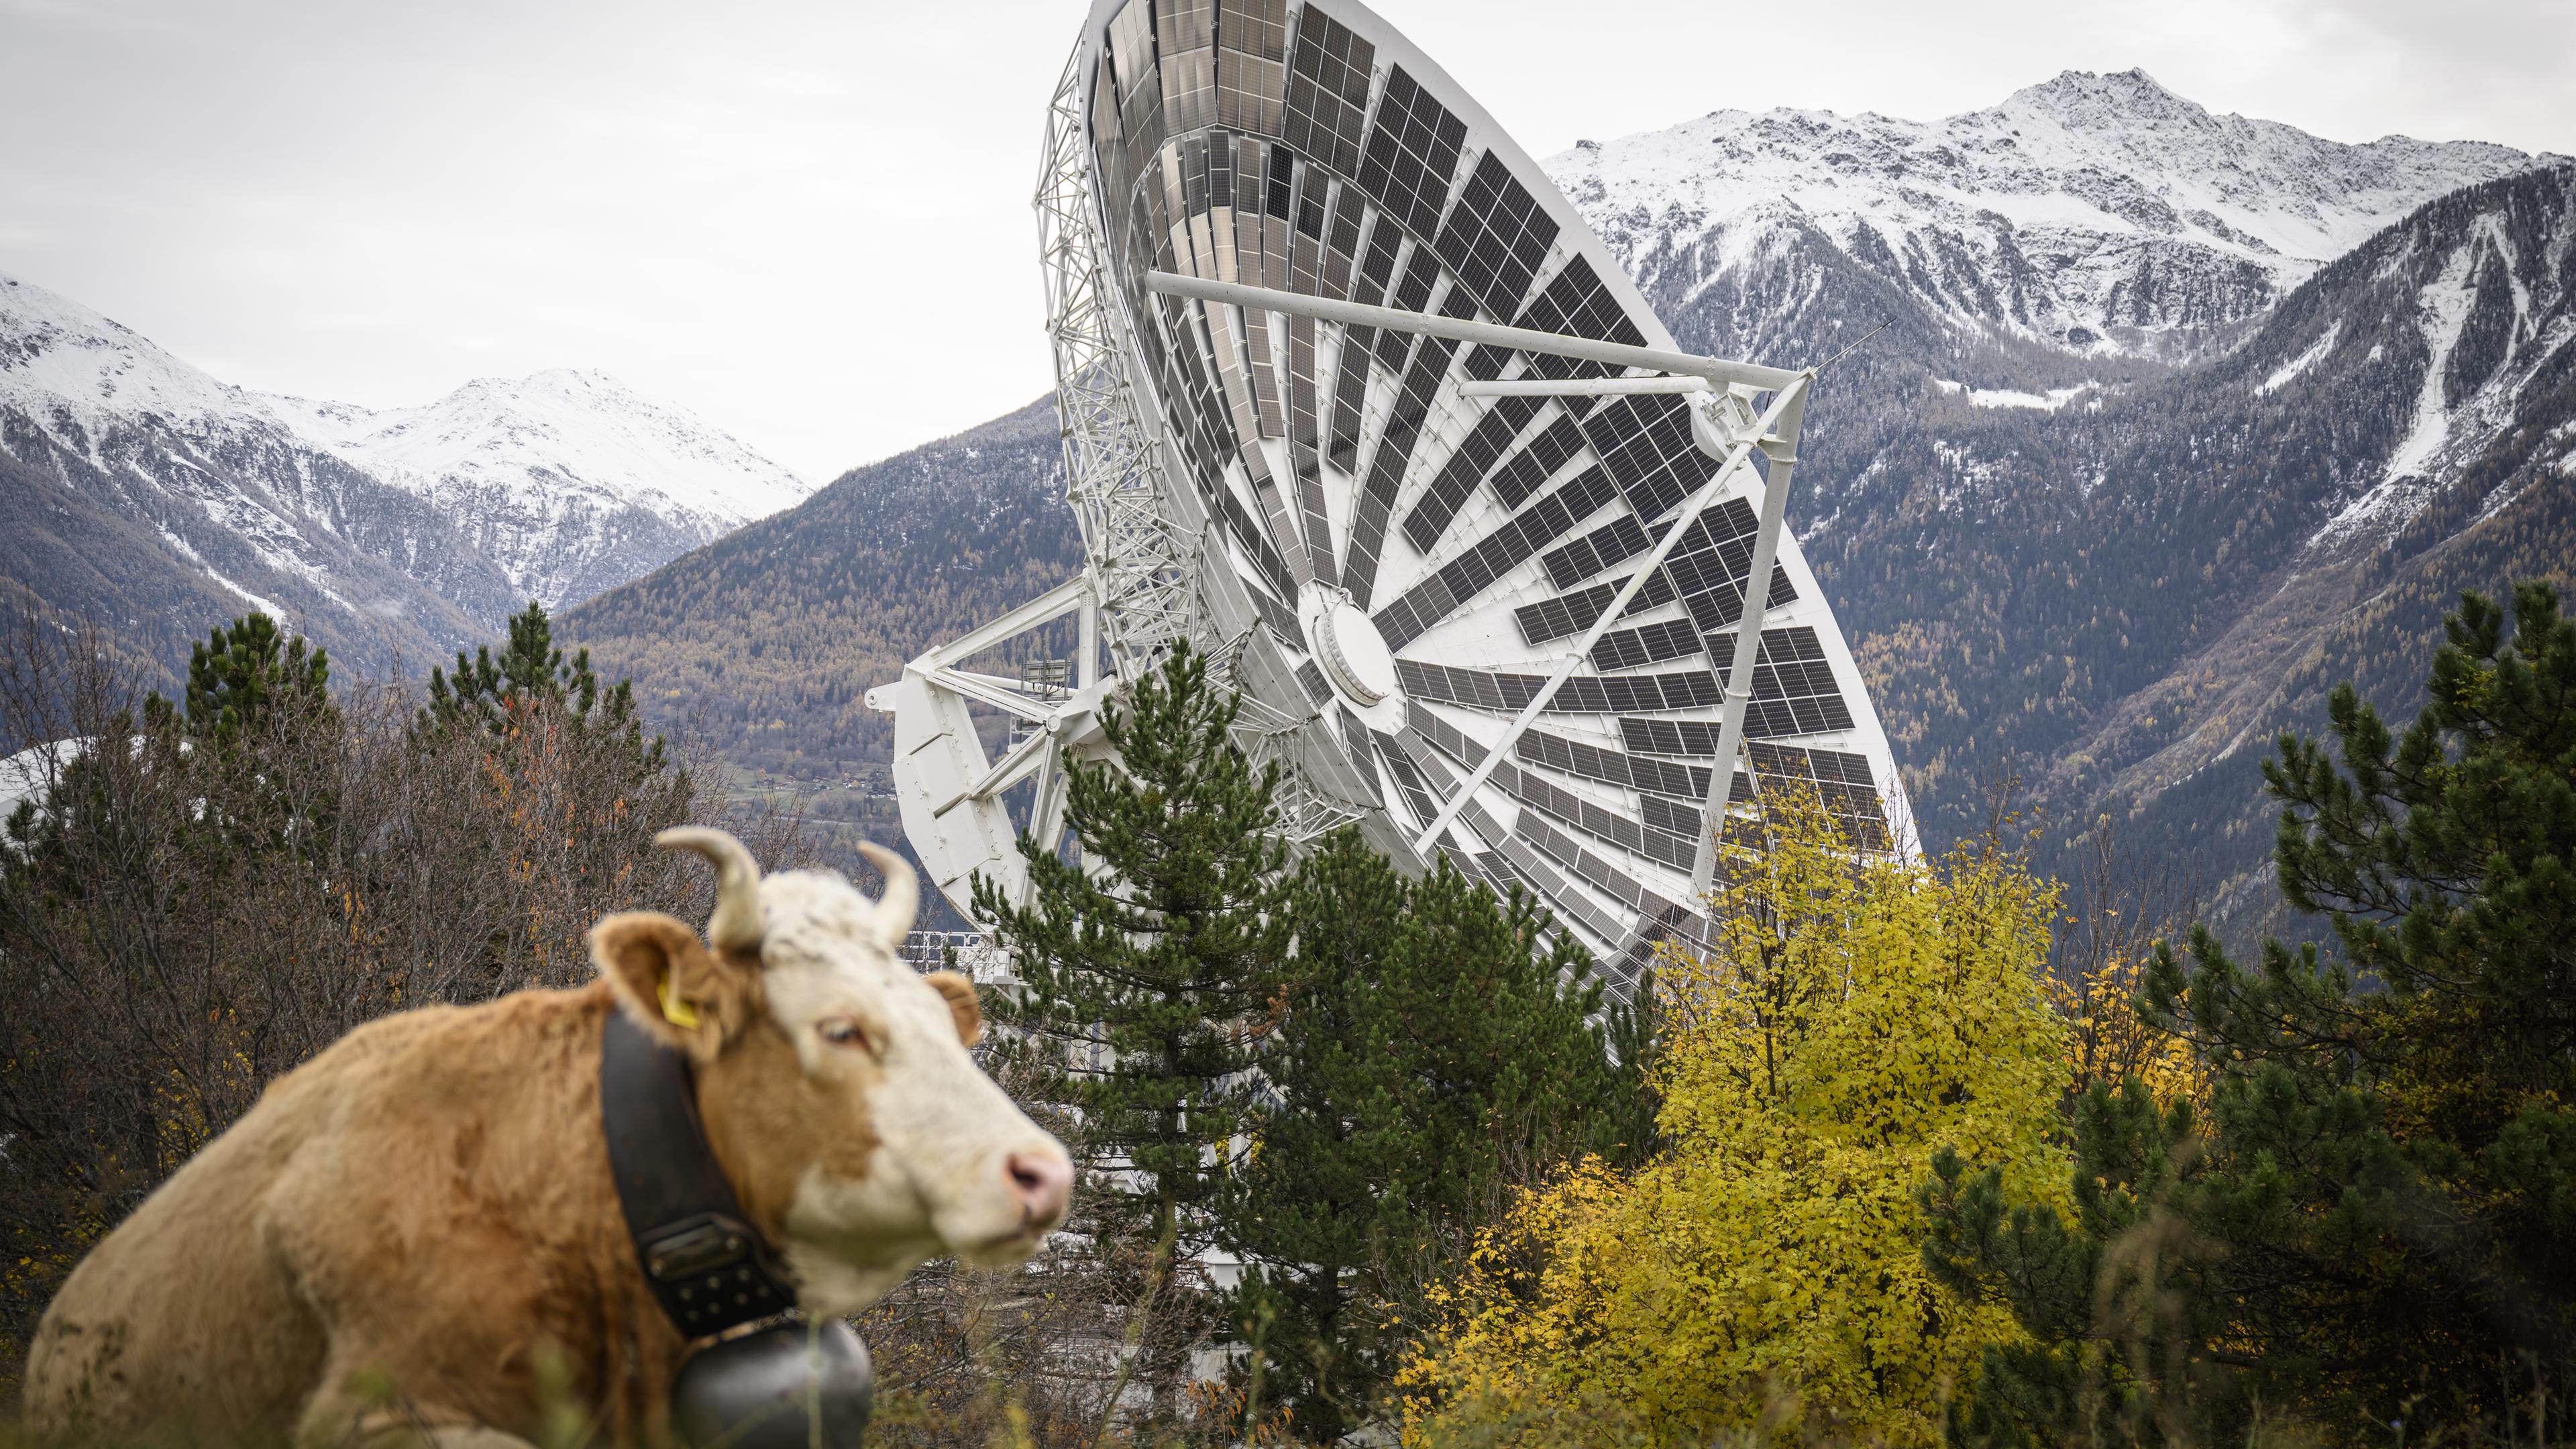 Schweiz, Leuk: Die erste Solaranlage Europas in ehemaligen Satellitenschüsseln.